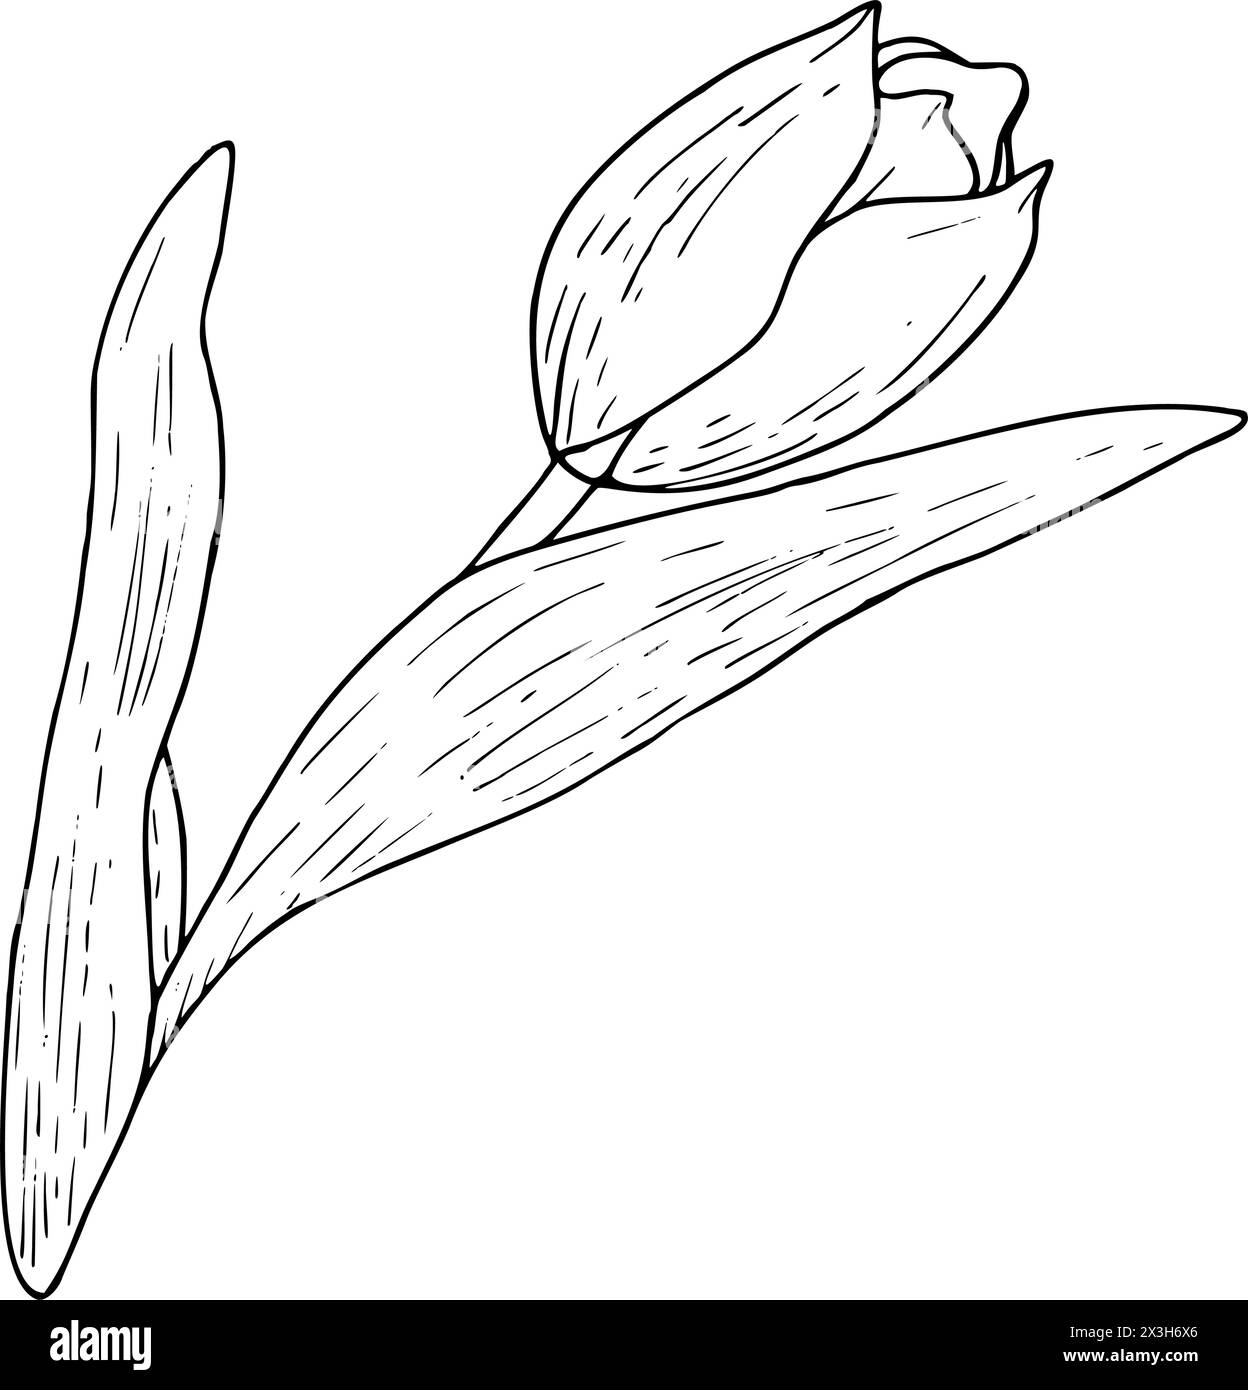 Illustration vectorielle de fleurs de tulipe. Dessin graphique de tête d'ampoule à feuilles courbes avec contour noir. Carte de voeux en fleurs botaniques. Silhouette de contour de ligne d'encre Illustration de Vecteur